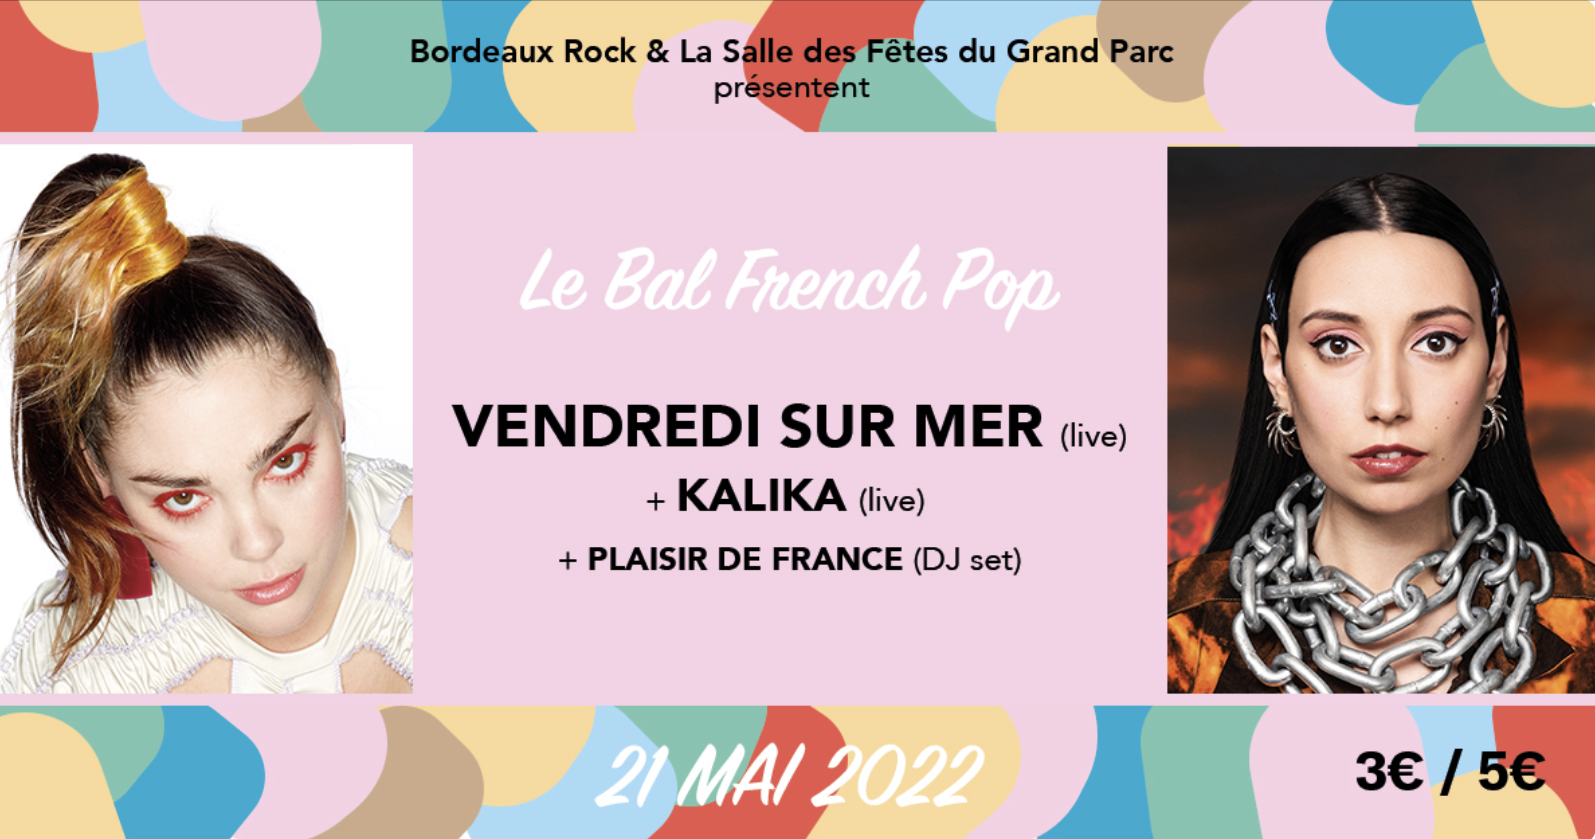 Le bal french pop de Bordeaux Rock au Grand Parc sur Longueur d'Ondes